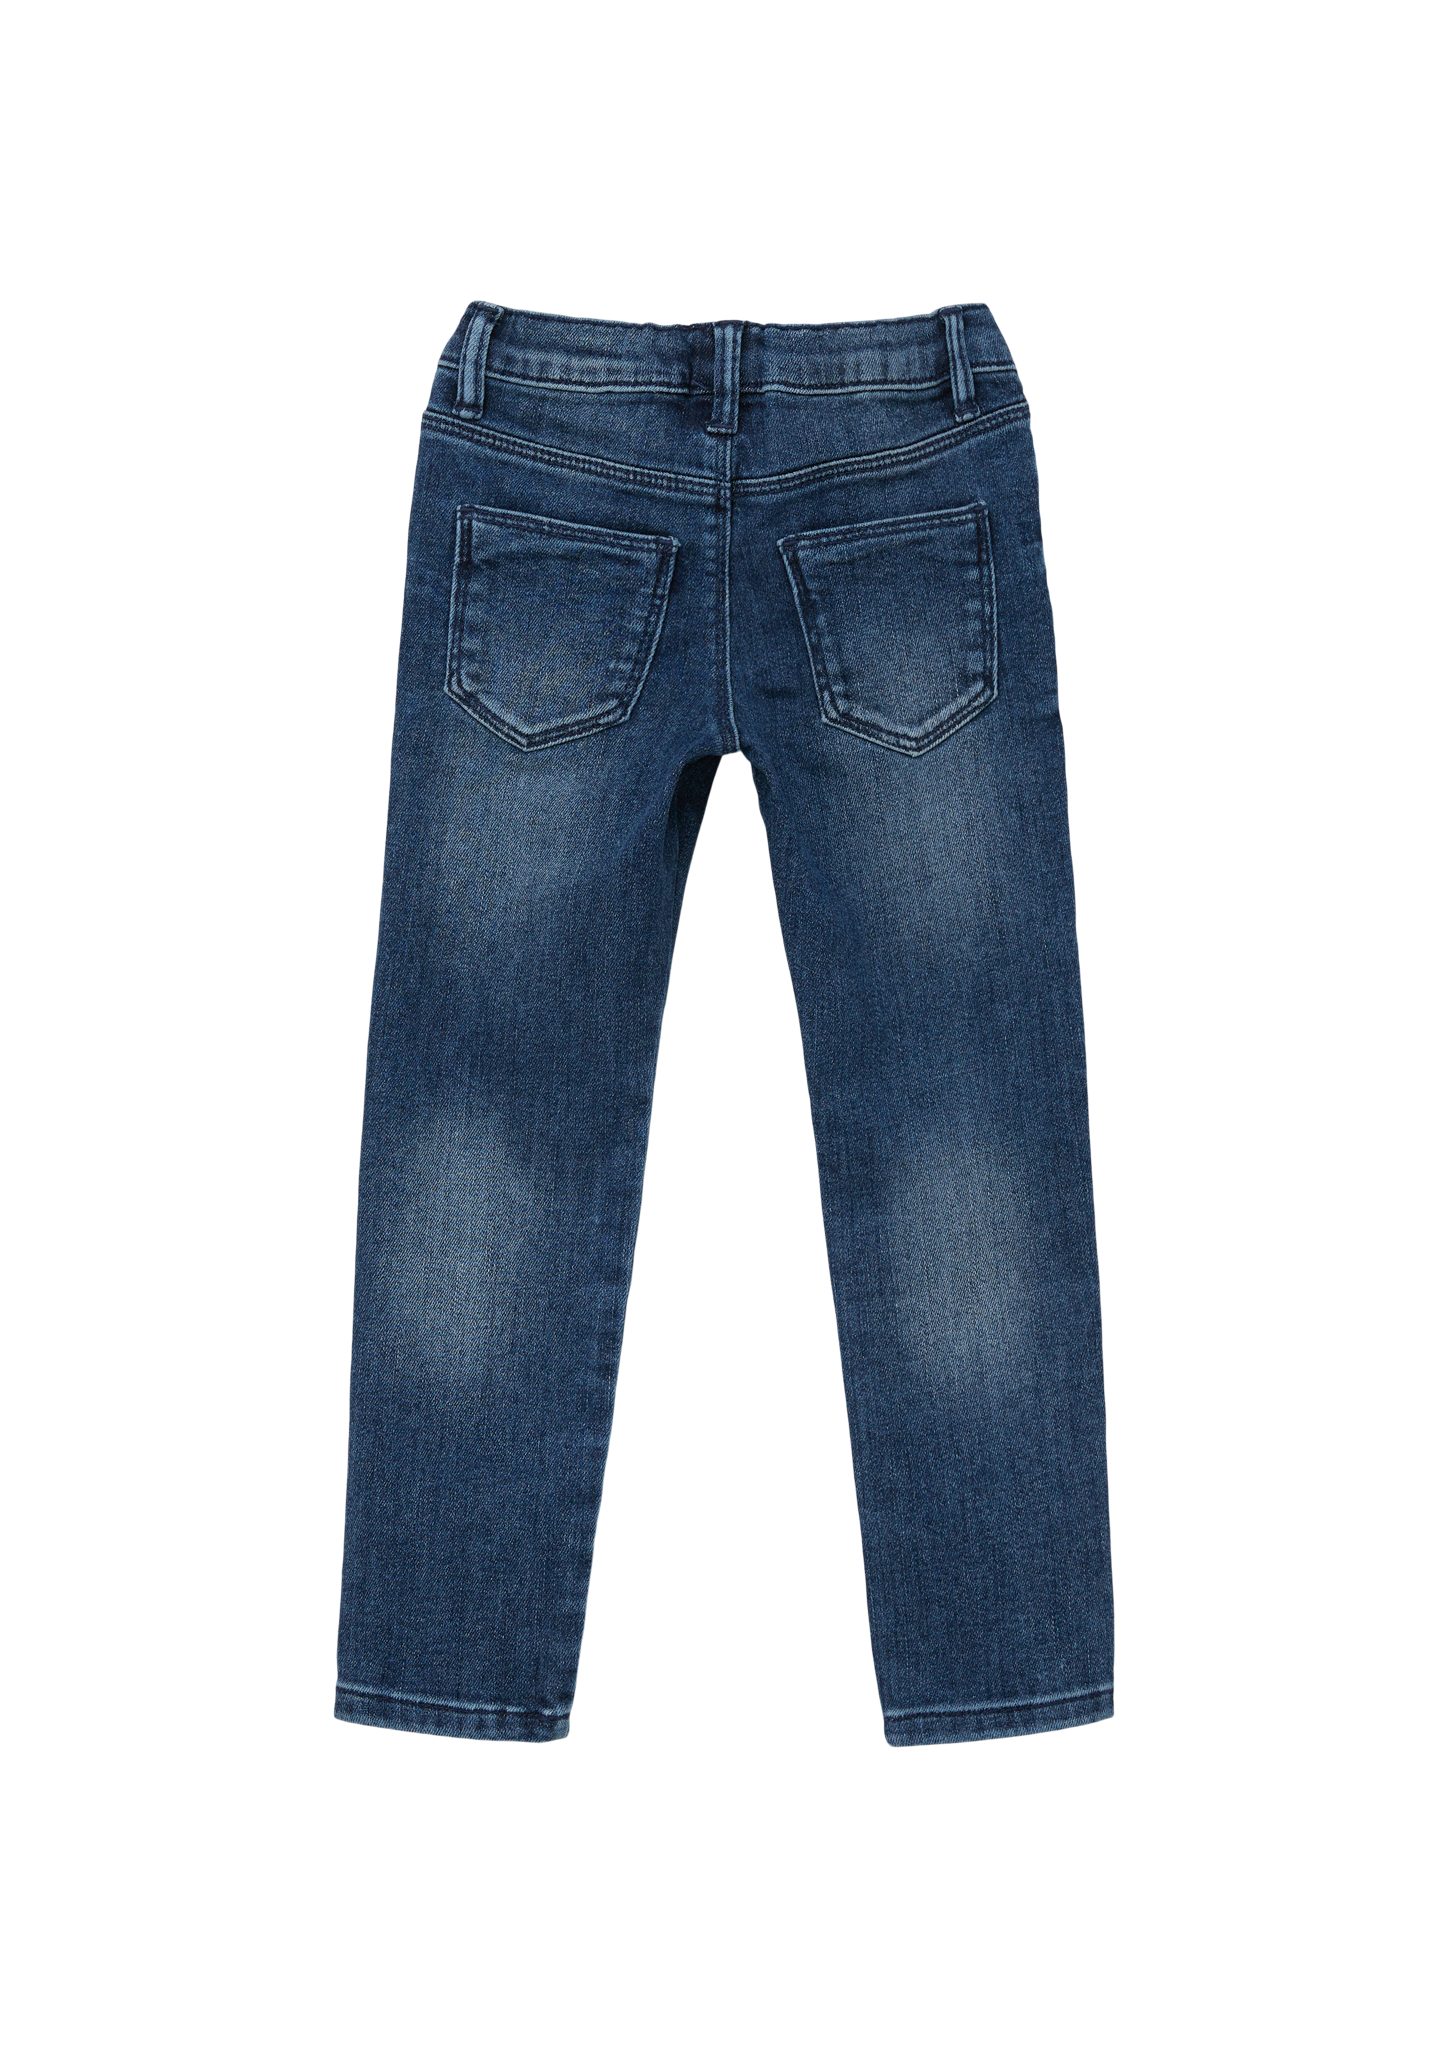 / Stoffhose Junior / Slim s.Oliver Leg Fit Treggings Elastikbund Jeans s.Oliver Mid / / Slim Waschung Rise